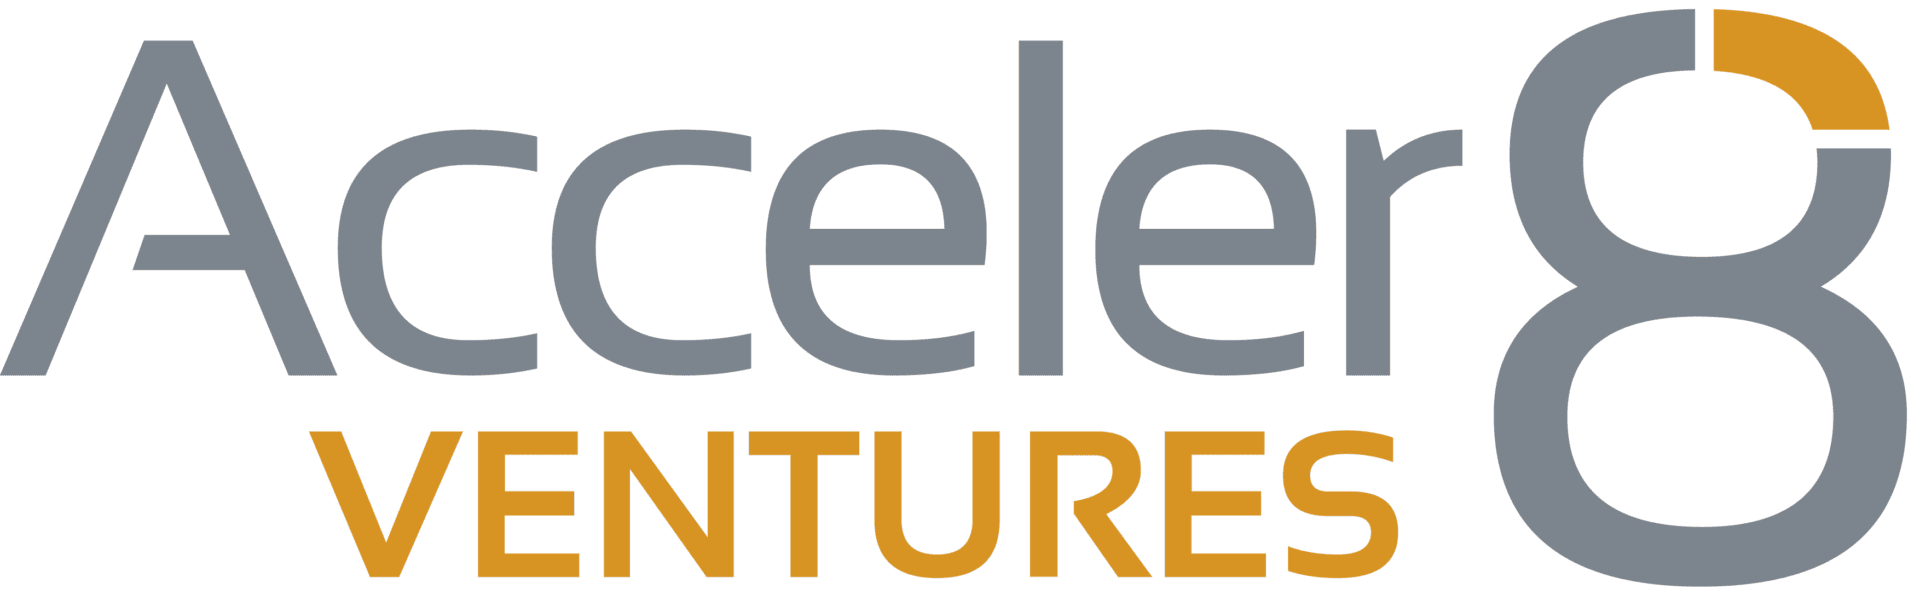 Acceler8 Ventures